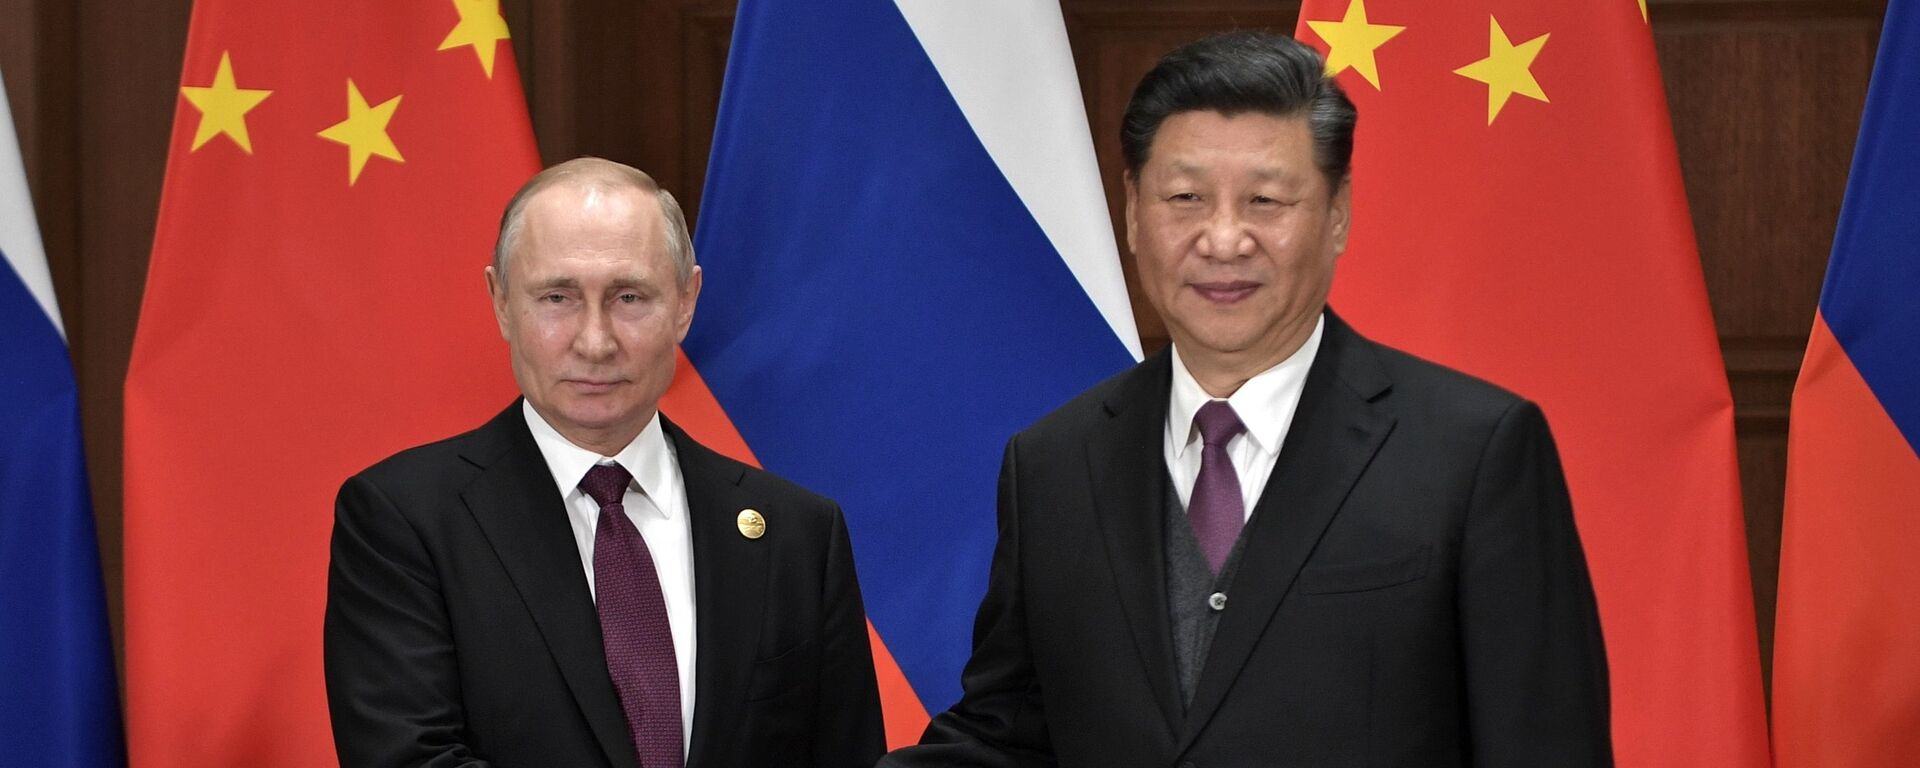 Tổng thống Nga Vladimir Putin  và Chủ tịch Trung Quốc Tập Cận Bình - Sputnik Việt Nam, 1920, 18.05.2021